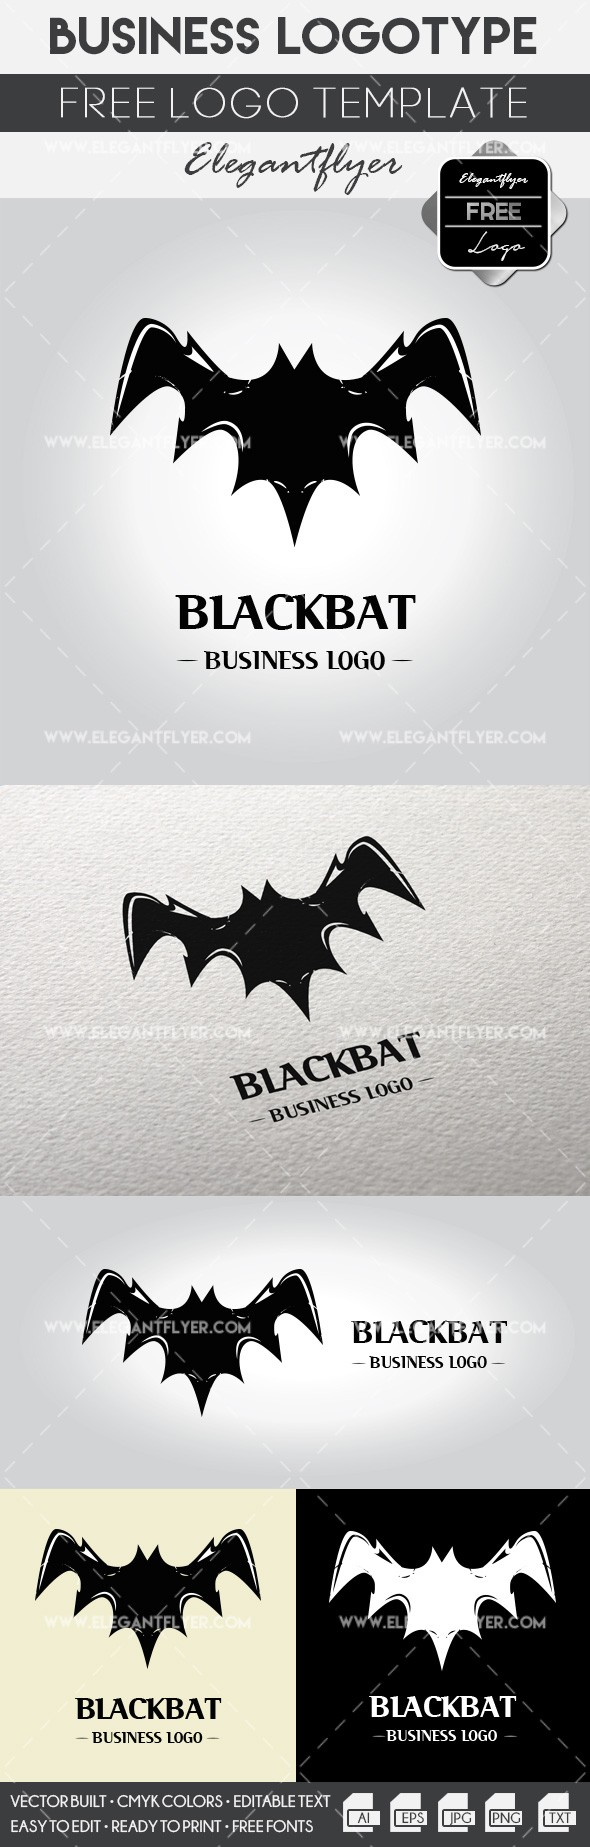 Negócios Blackbat by ElegantFlyer